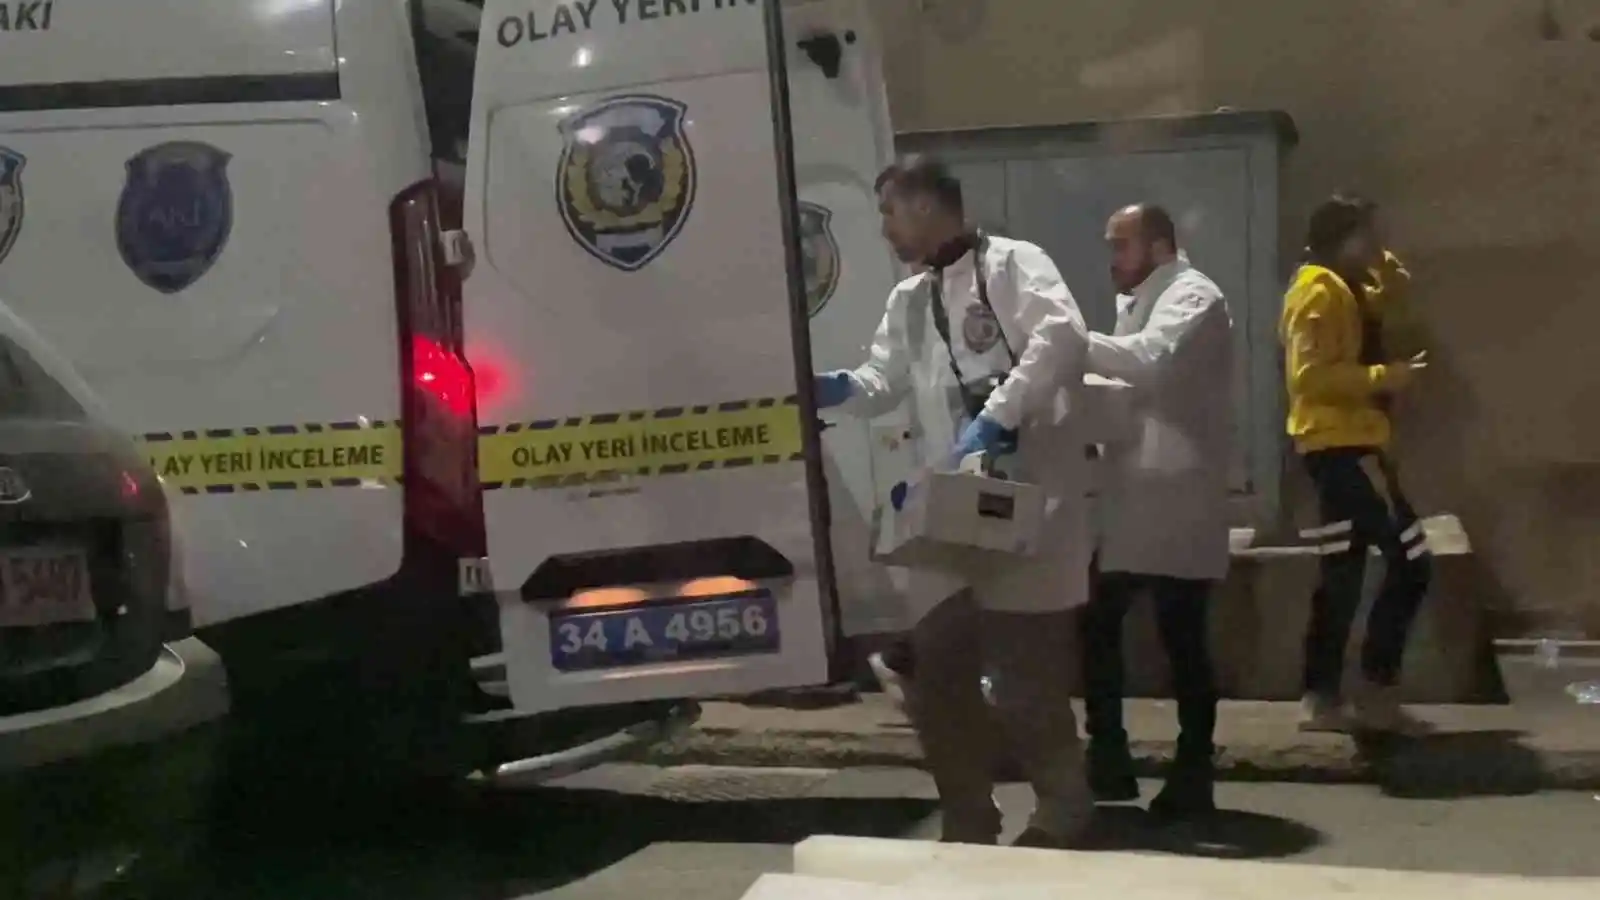 Ümraniye’de 1 kişinin öldüğü 1 kişinin yaralandığı olayın ayrıntıları ortaya çıktı
